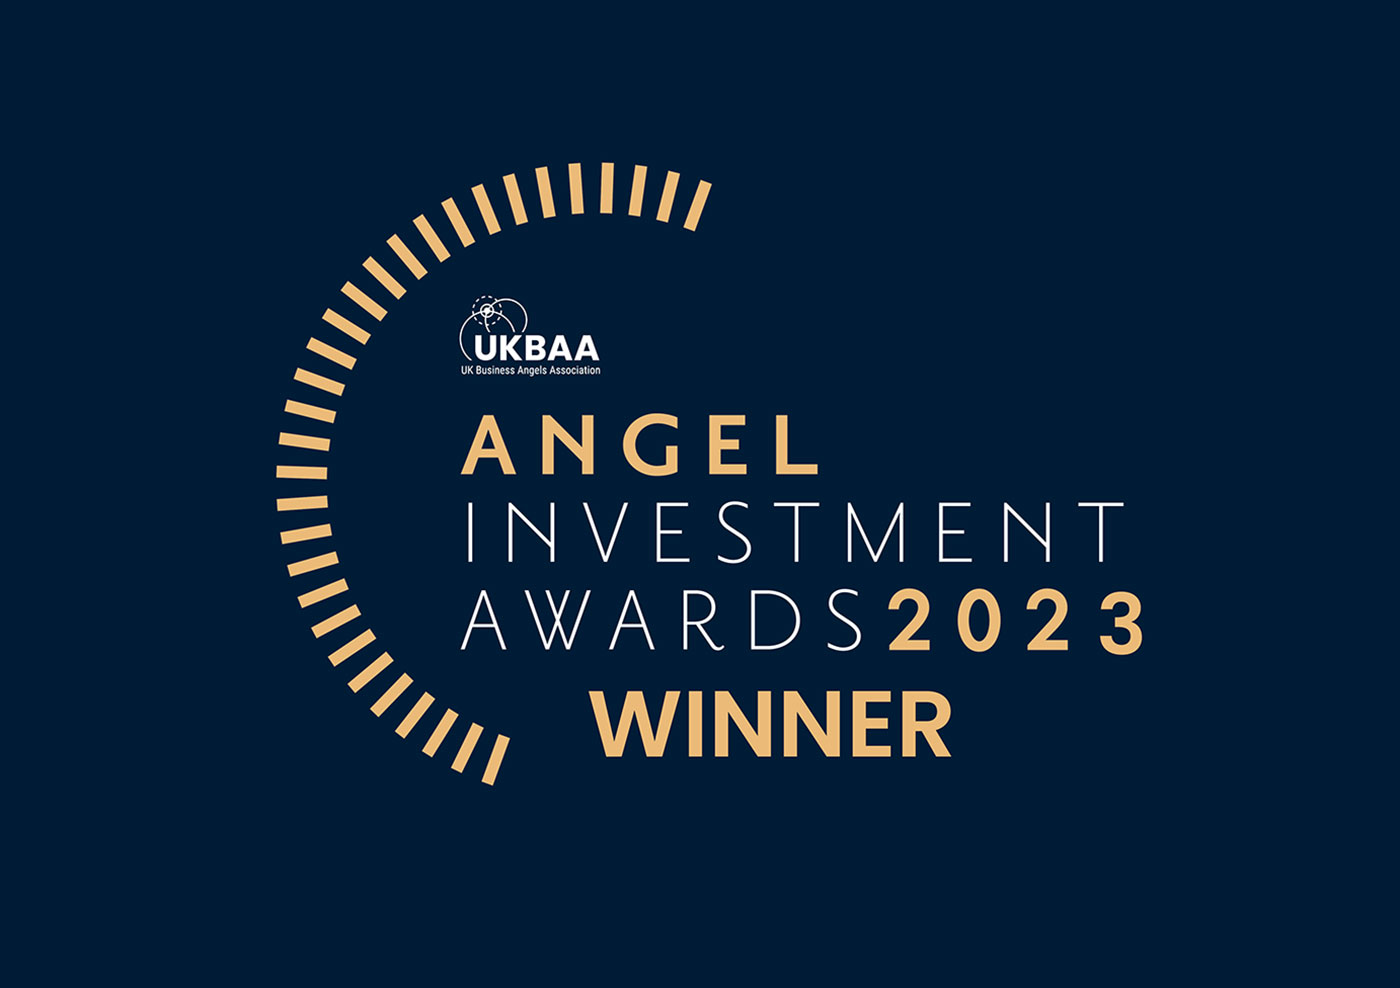 Angel investment awards 2023 winner logo